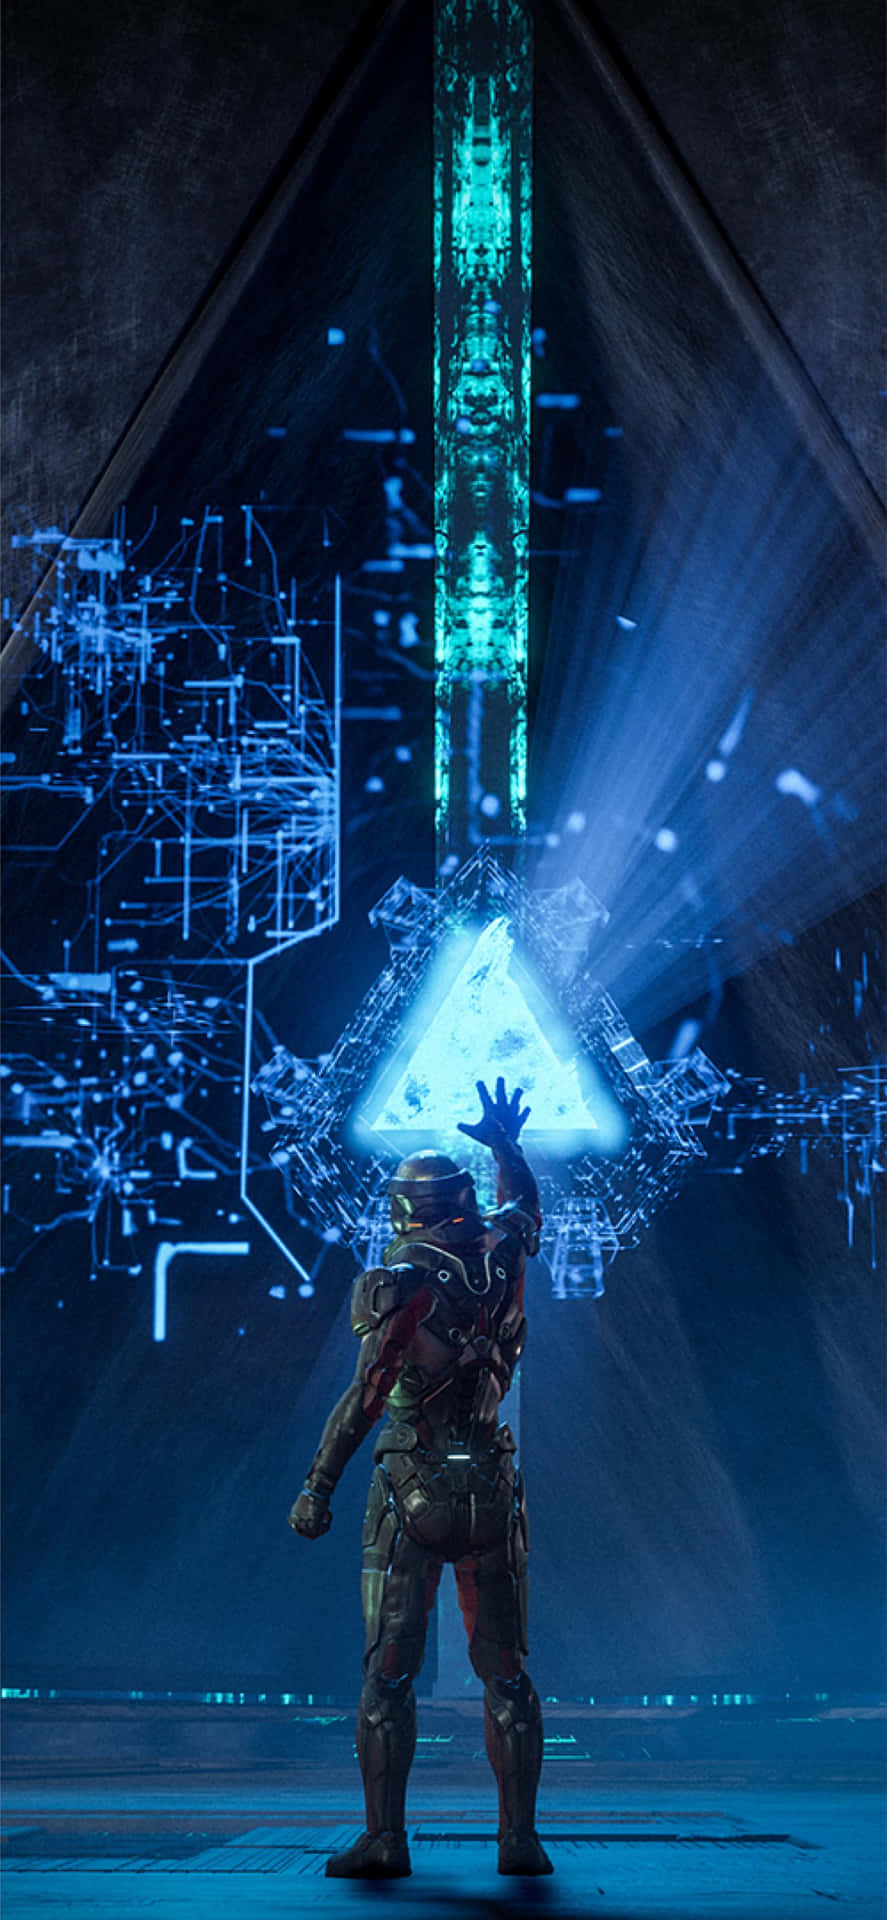 Commander Shepard - The Legendary Paragon Of Mass Effect Universe Wallpaper